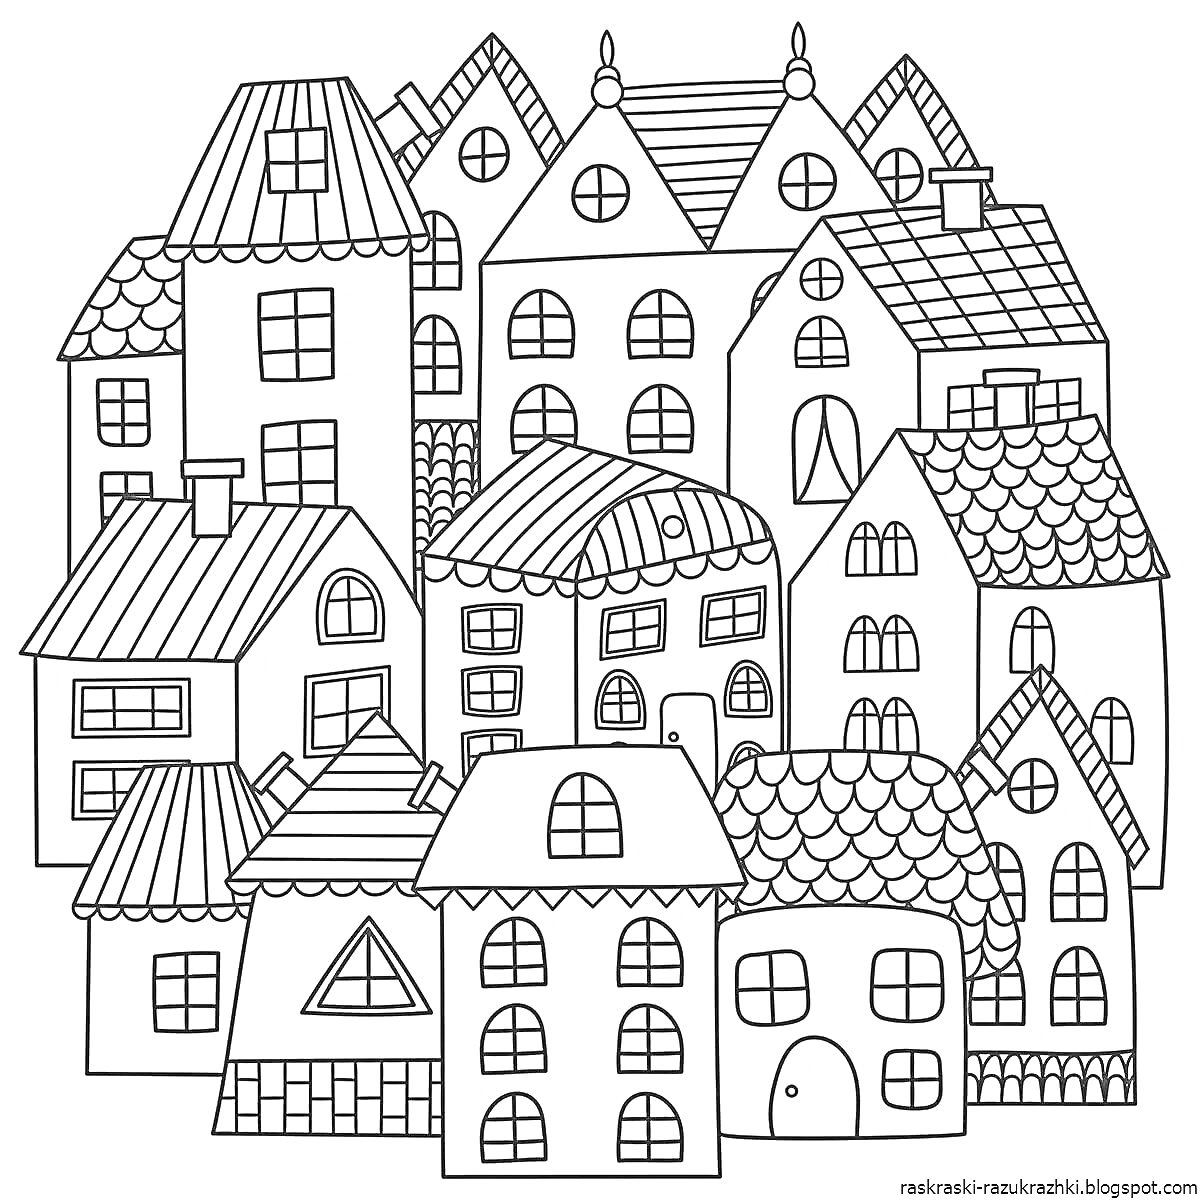 Раскраска Большой дом состоящий из множества маленьких домиков с крышами, окнами и дверями